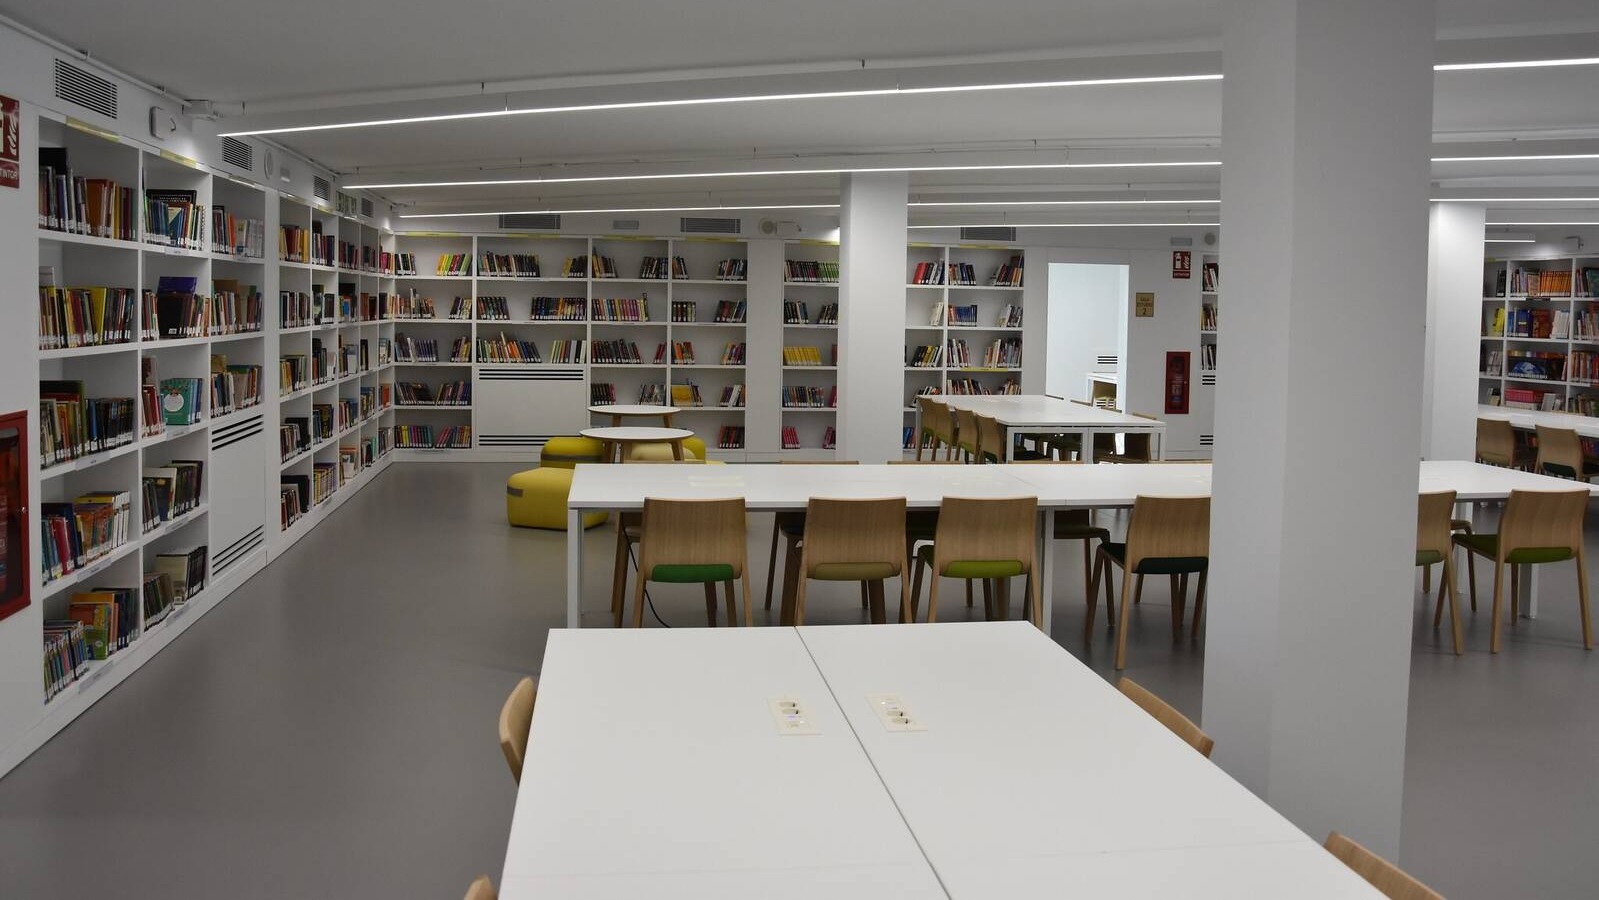 La biblioteca Princesa Leonor de Boadilla recibe cerca de 40.000 visitas en el primer semestre desde su apertura